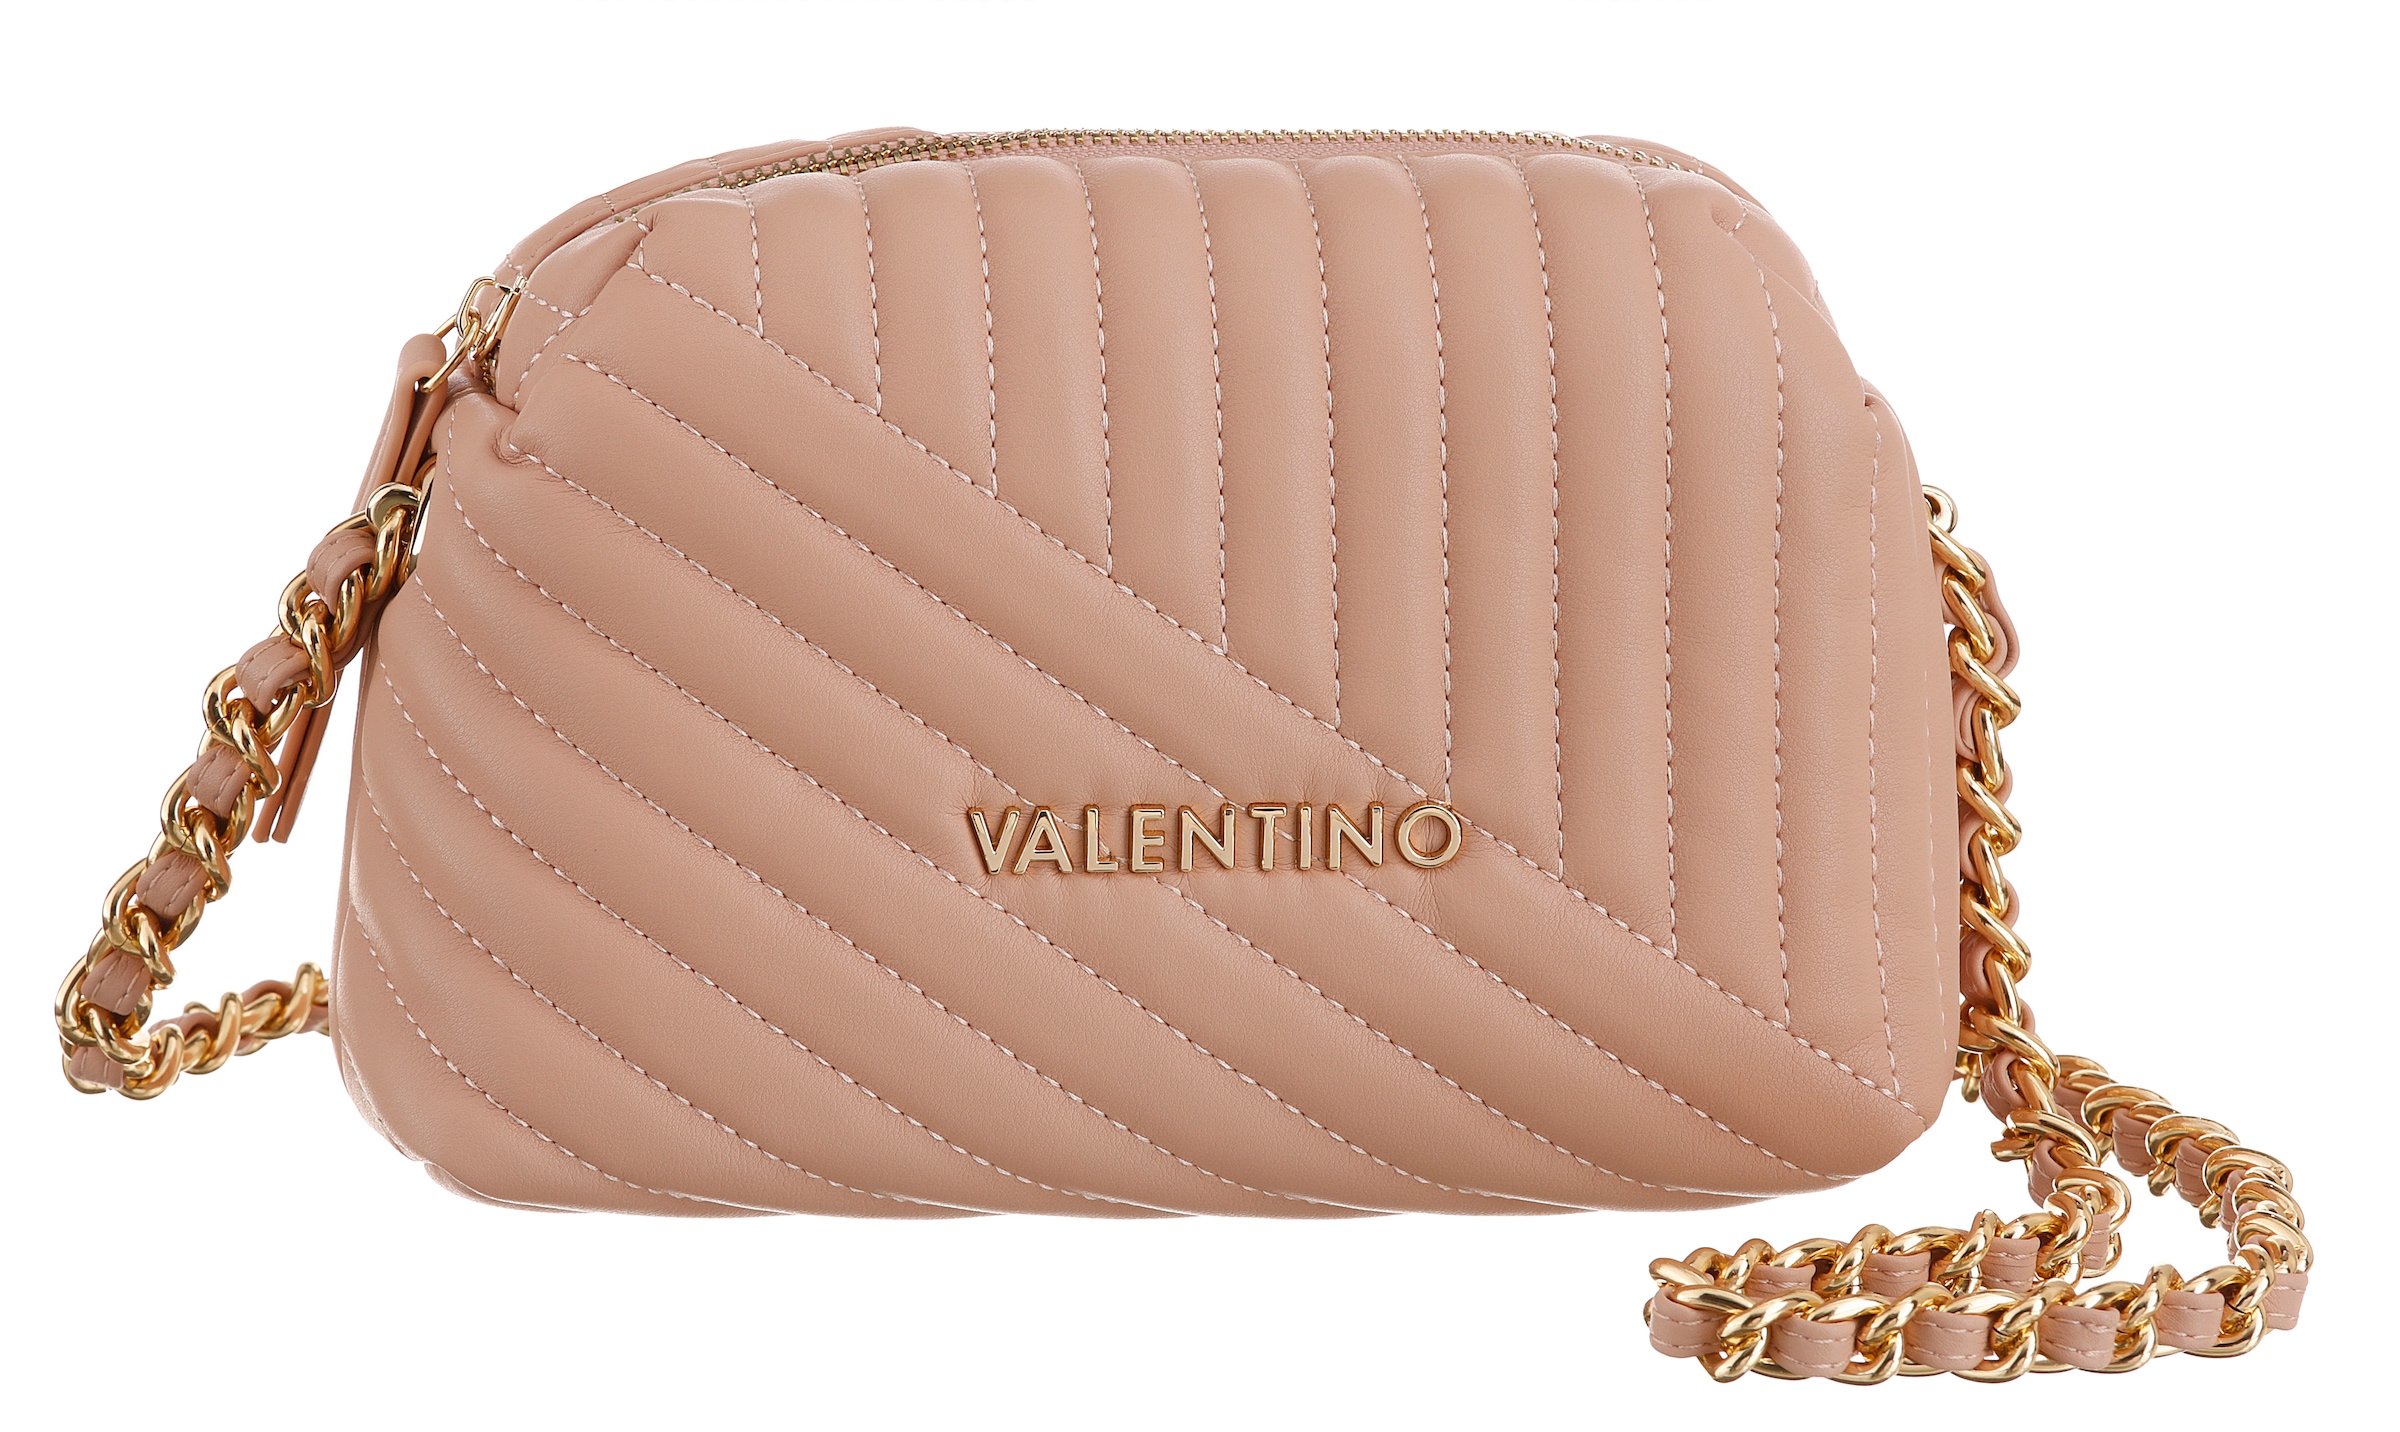 & | Valentino SALE BAUR Angebote Online-Outlet günstige %